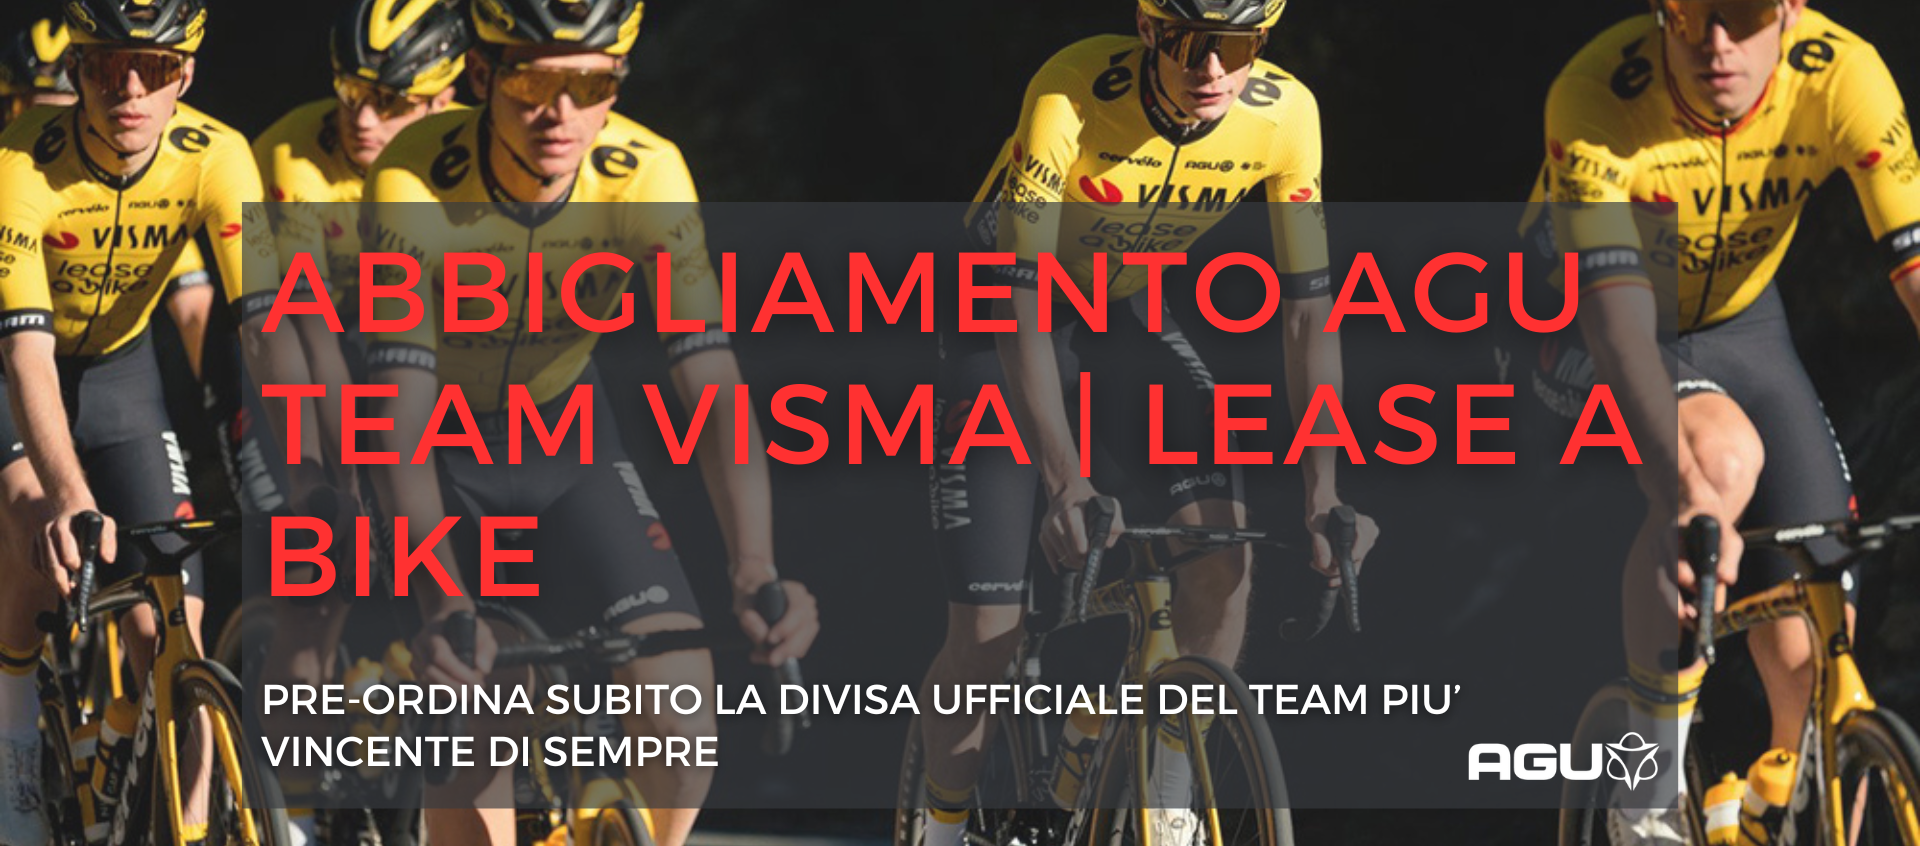 AGU Team Visma | Lease a Bike